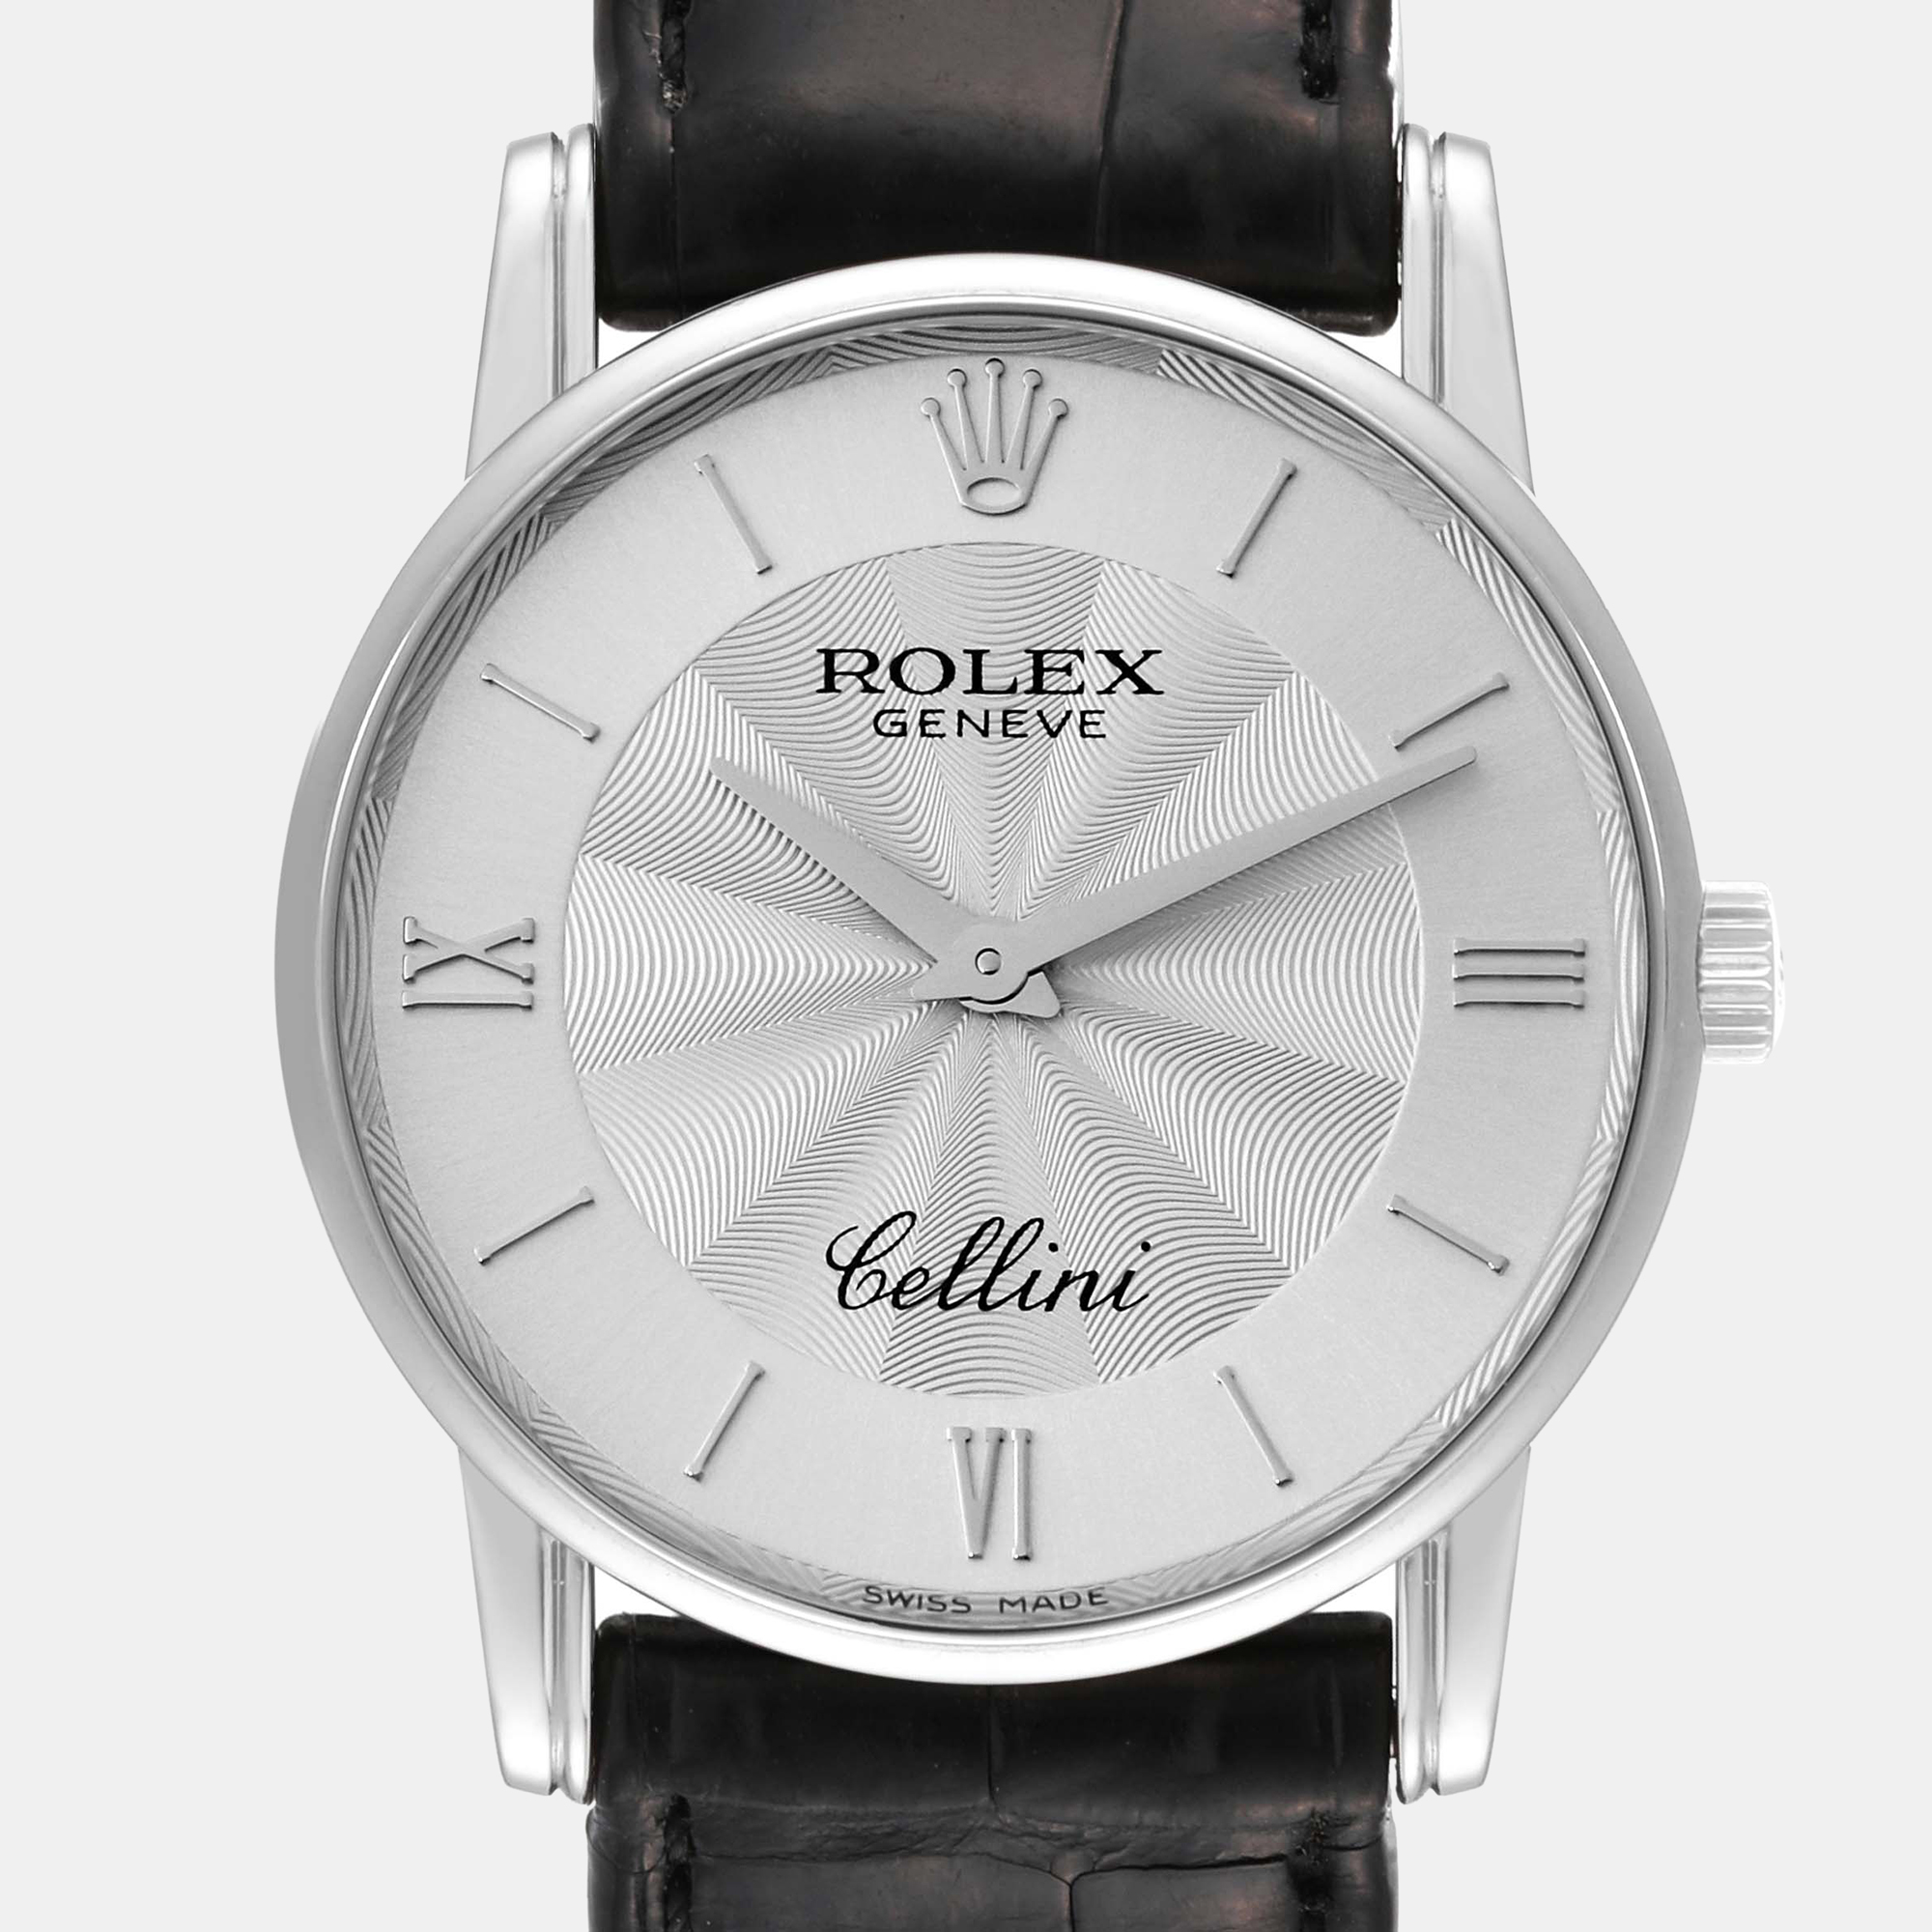 Rolex Cellini Classic White Gold Silver Guilloche Dial Men's Watch 5116 31.8 X 5.5 Mm